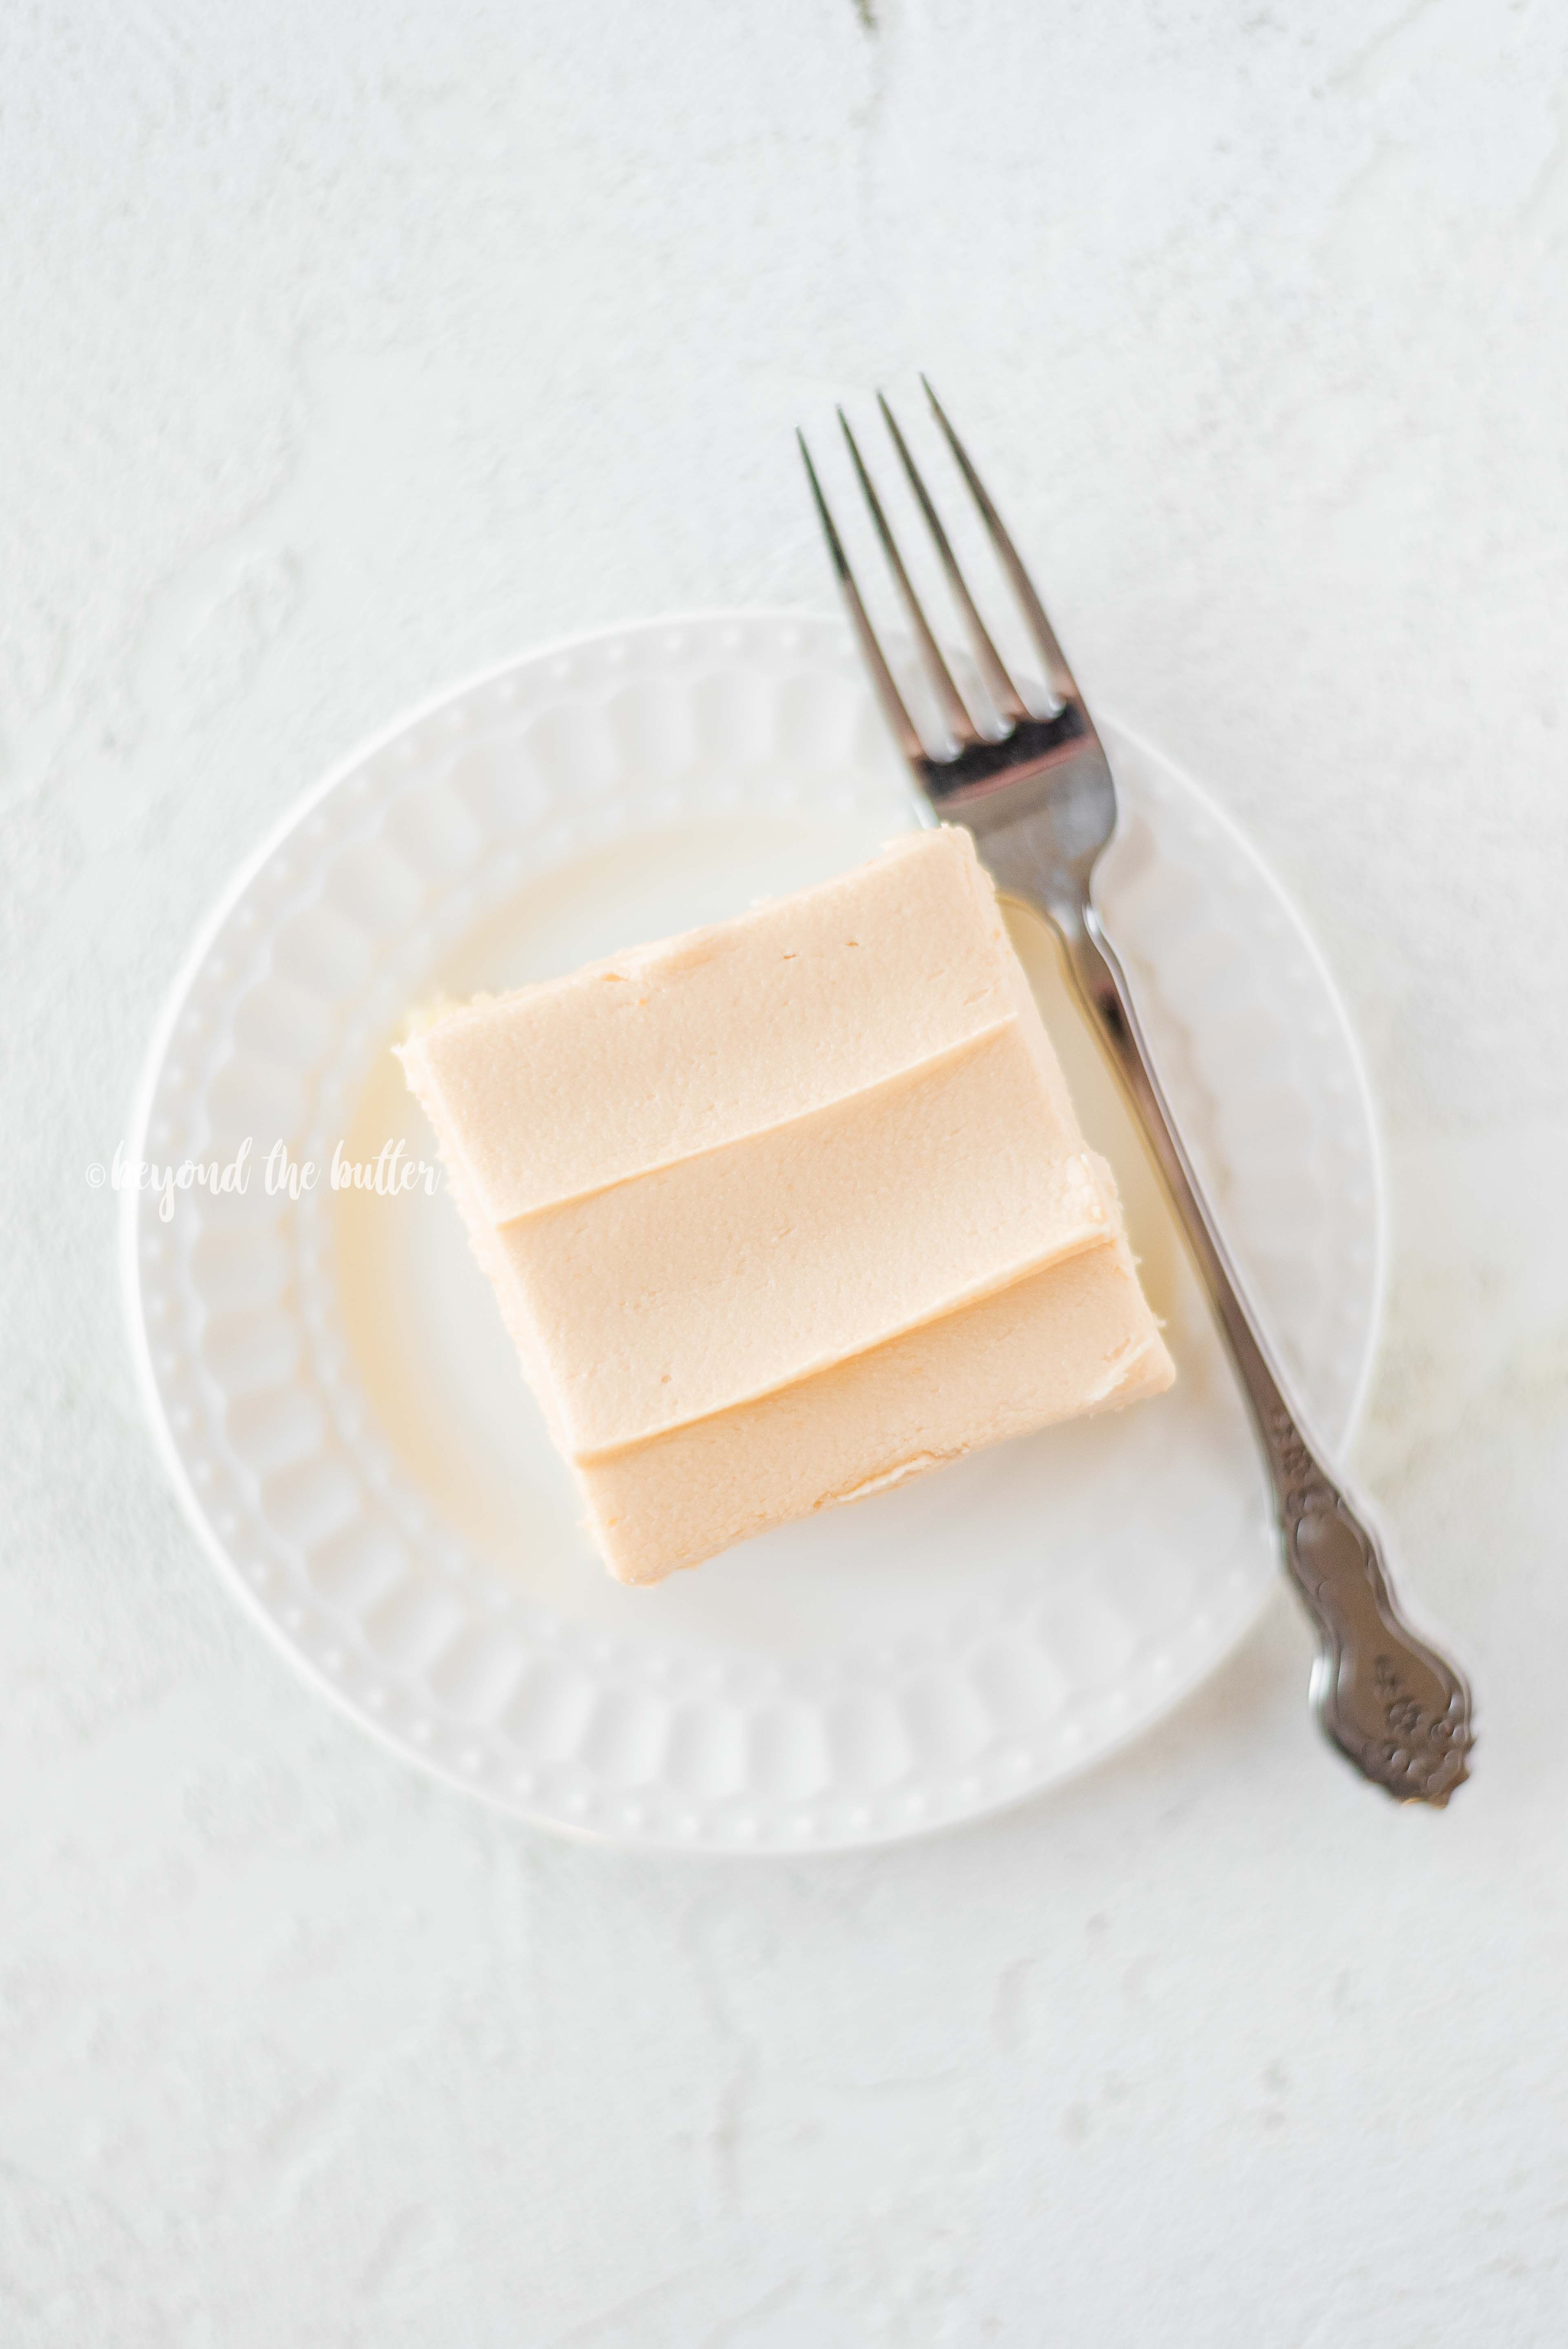 Homemade Butterscotch Krimpet Sheet Cake recipe | All Images © Beyond the Butter, LLC